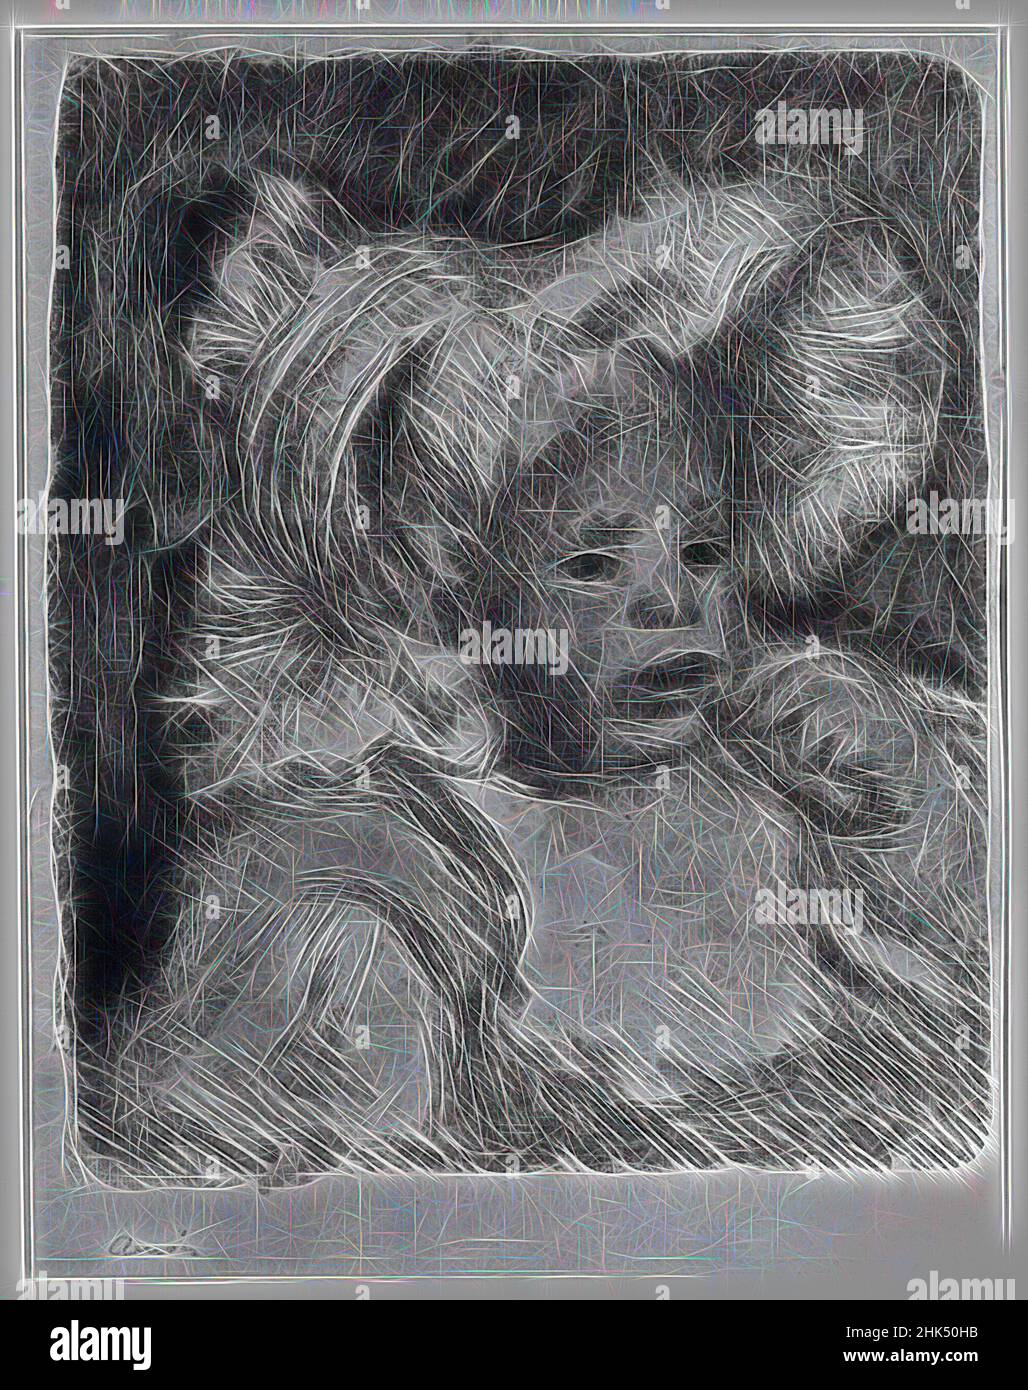 Ispirato da bambino con un biscotto, l'Enfant au Biscuit, Pierre-Auguste Renoir, francese, 1841-1919, Litografia su carta ovata, Francia, 1899, 12 5/8 x 10 5/8 pollici, 32,1 x 27 cm, reinventata da Artotop. L'arte classica reinventata con un tocco moderno. Design di calda e allegra luminosità e di raggi di luce. La fotografia si ispira al surrealismo e al futurismo, abbracciando l'energia dinamica della tecnologia moderna, del movimento, della velocità e rivoluzionando la cultura Foto Stock